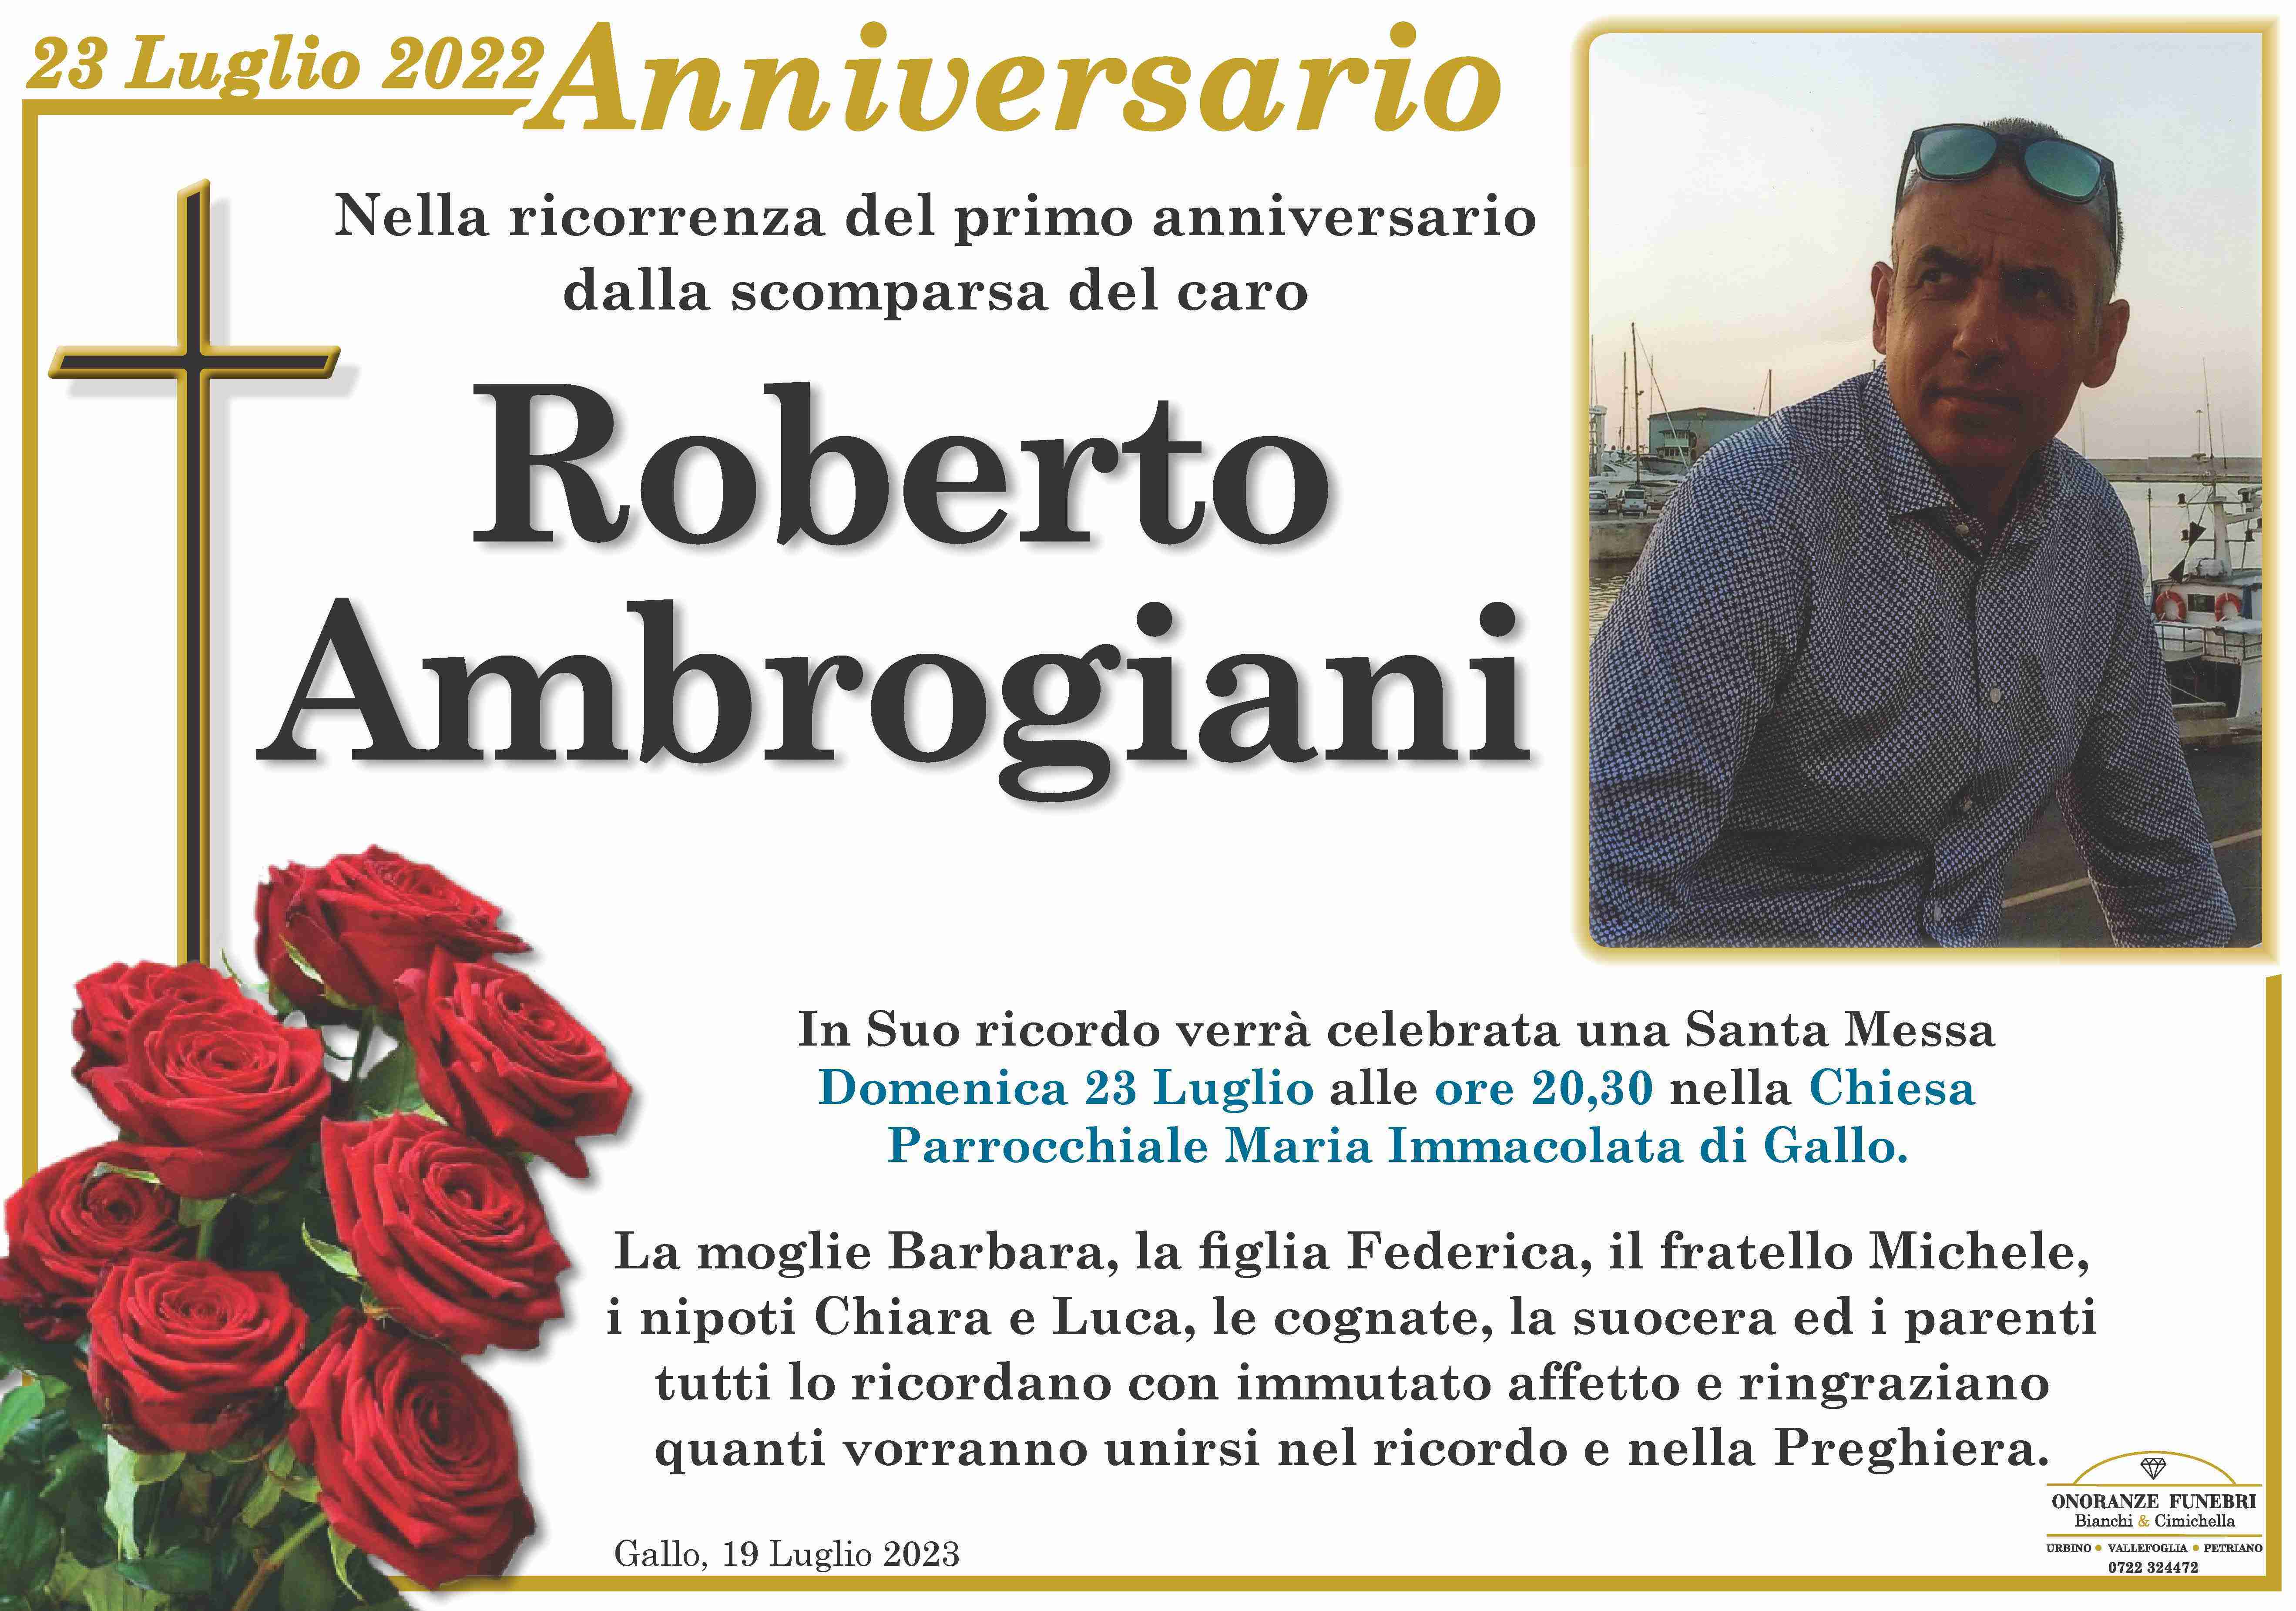 Roberto Ambrogiani